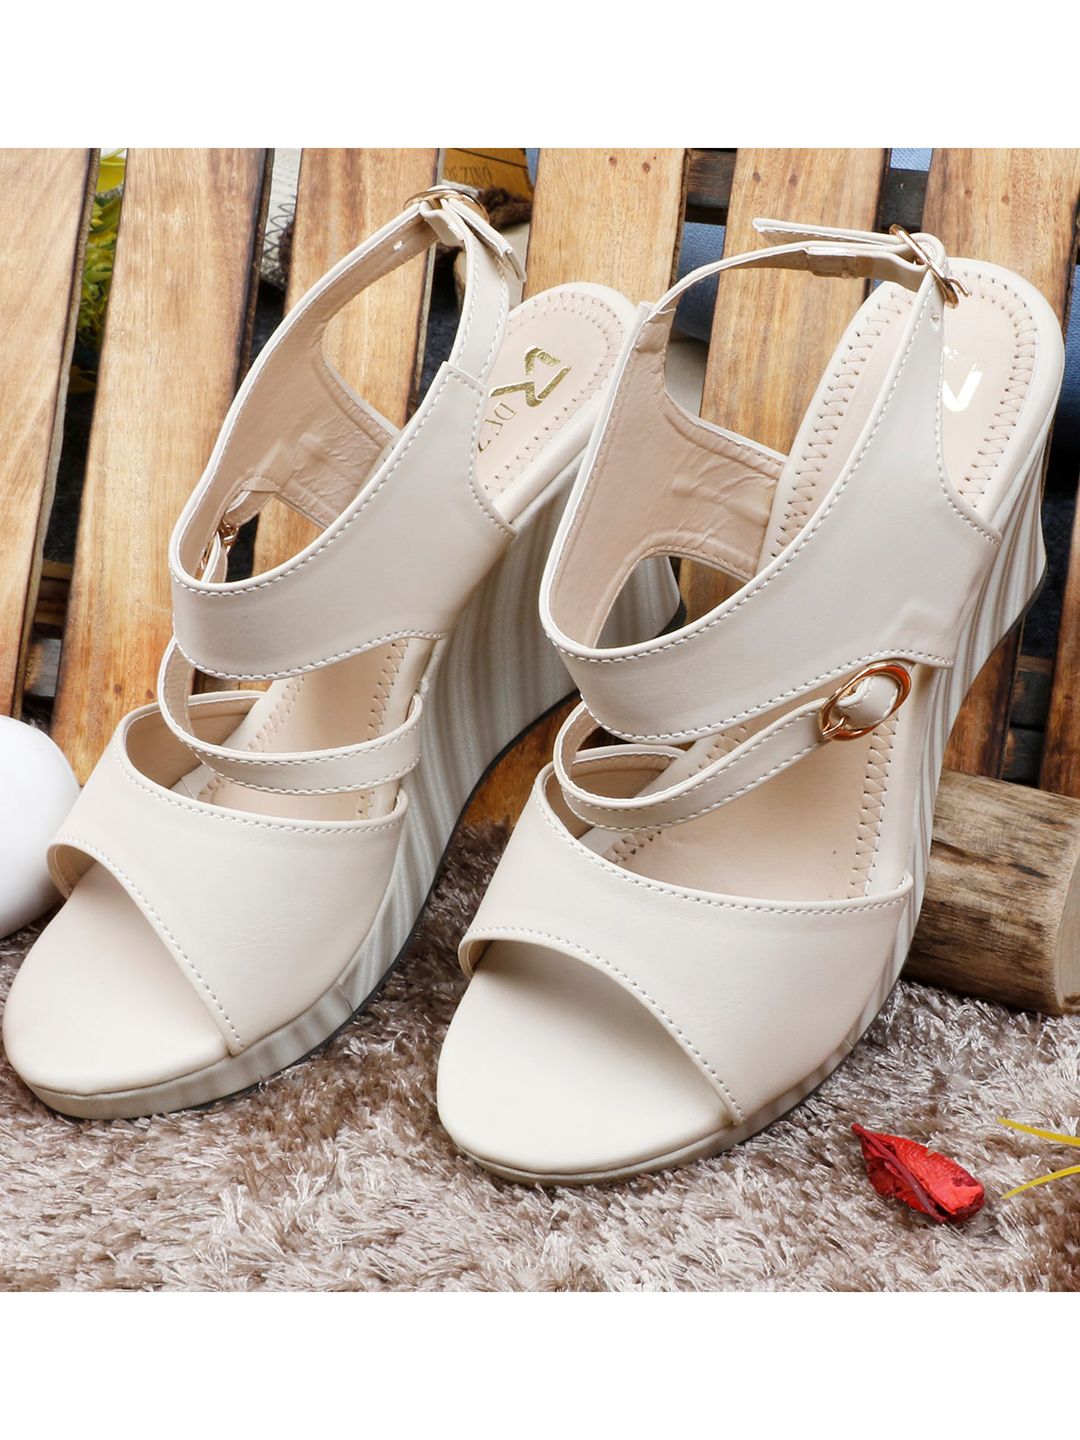 R DEZINO Cream-Coloured Wedge Sandals Price in India